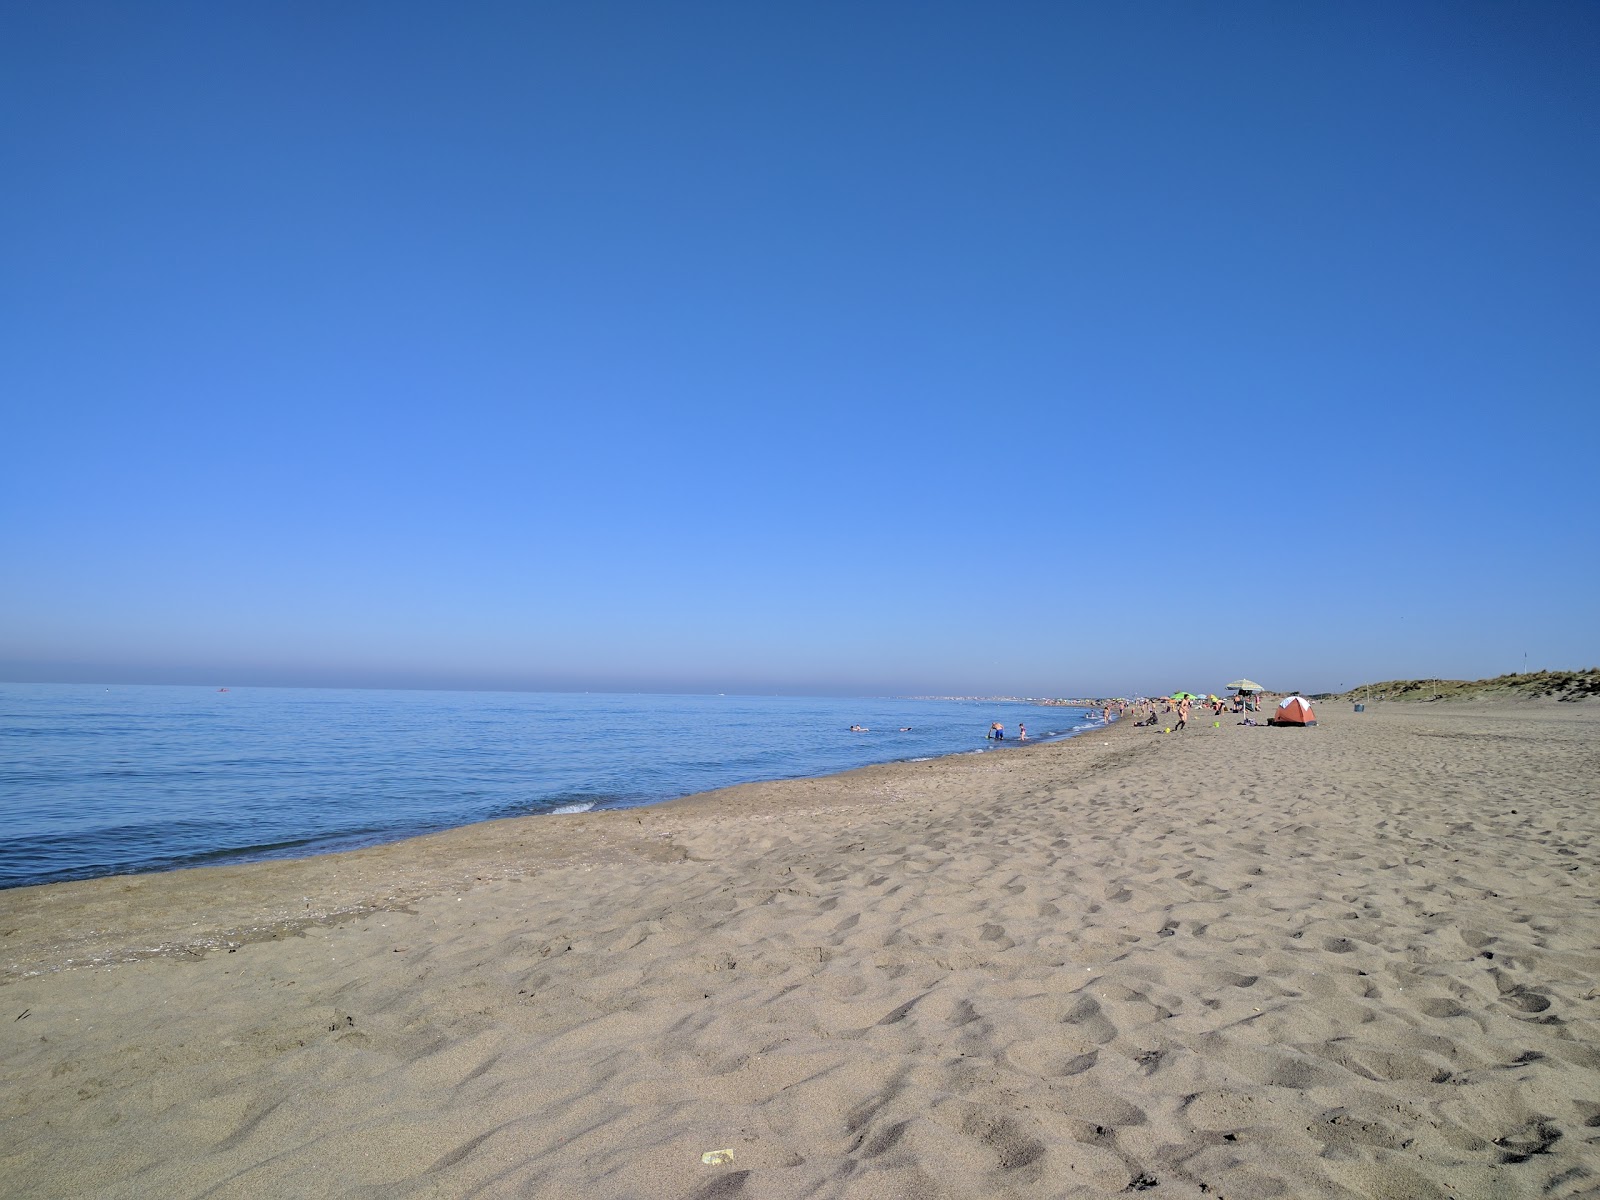 Foto di Castel Porziano beach con una superficie del sabbia scura